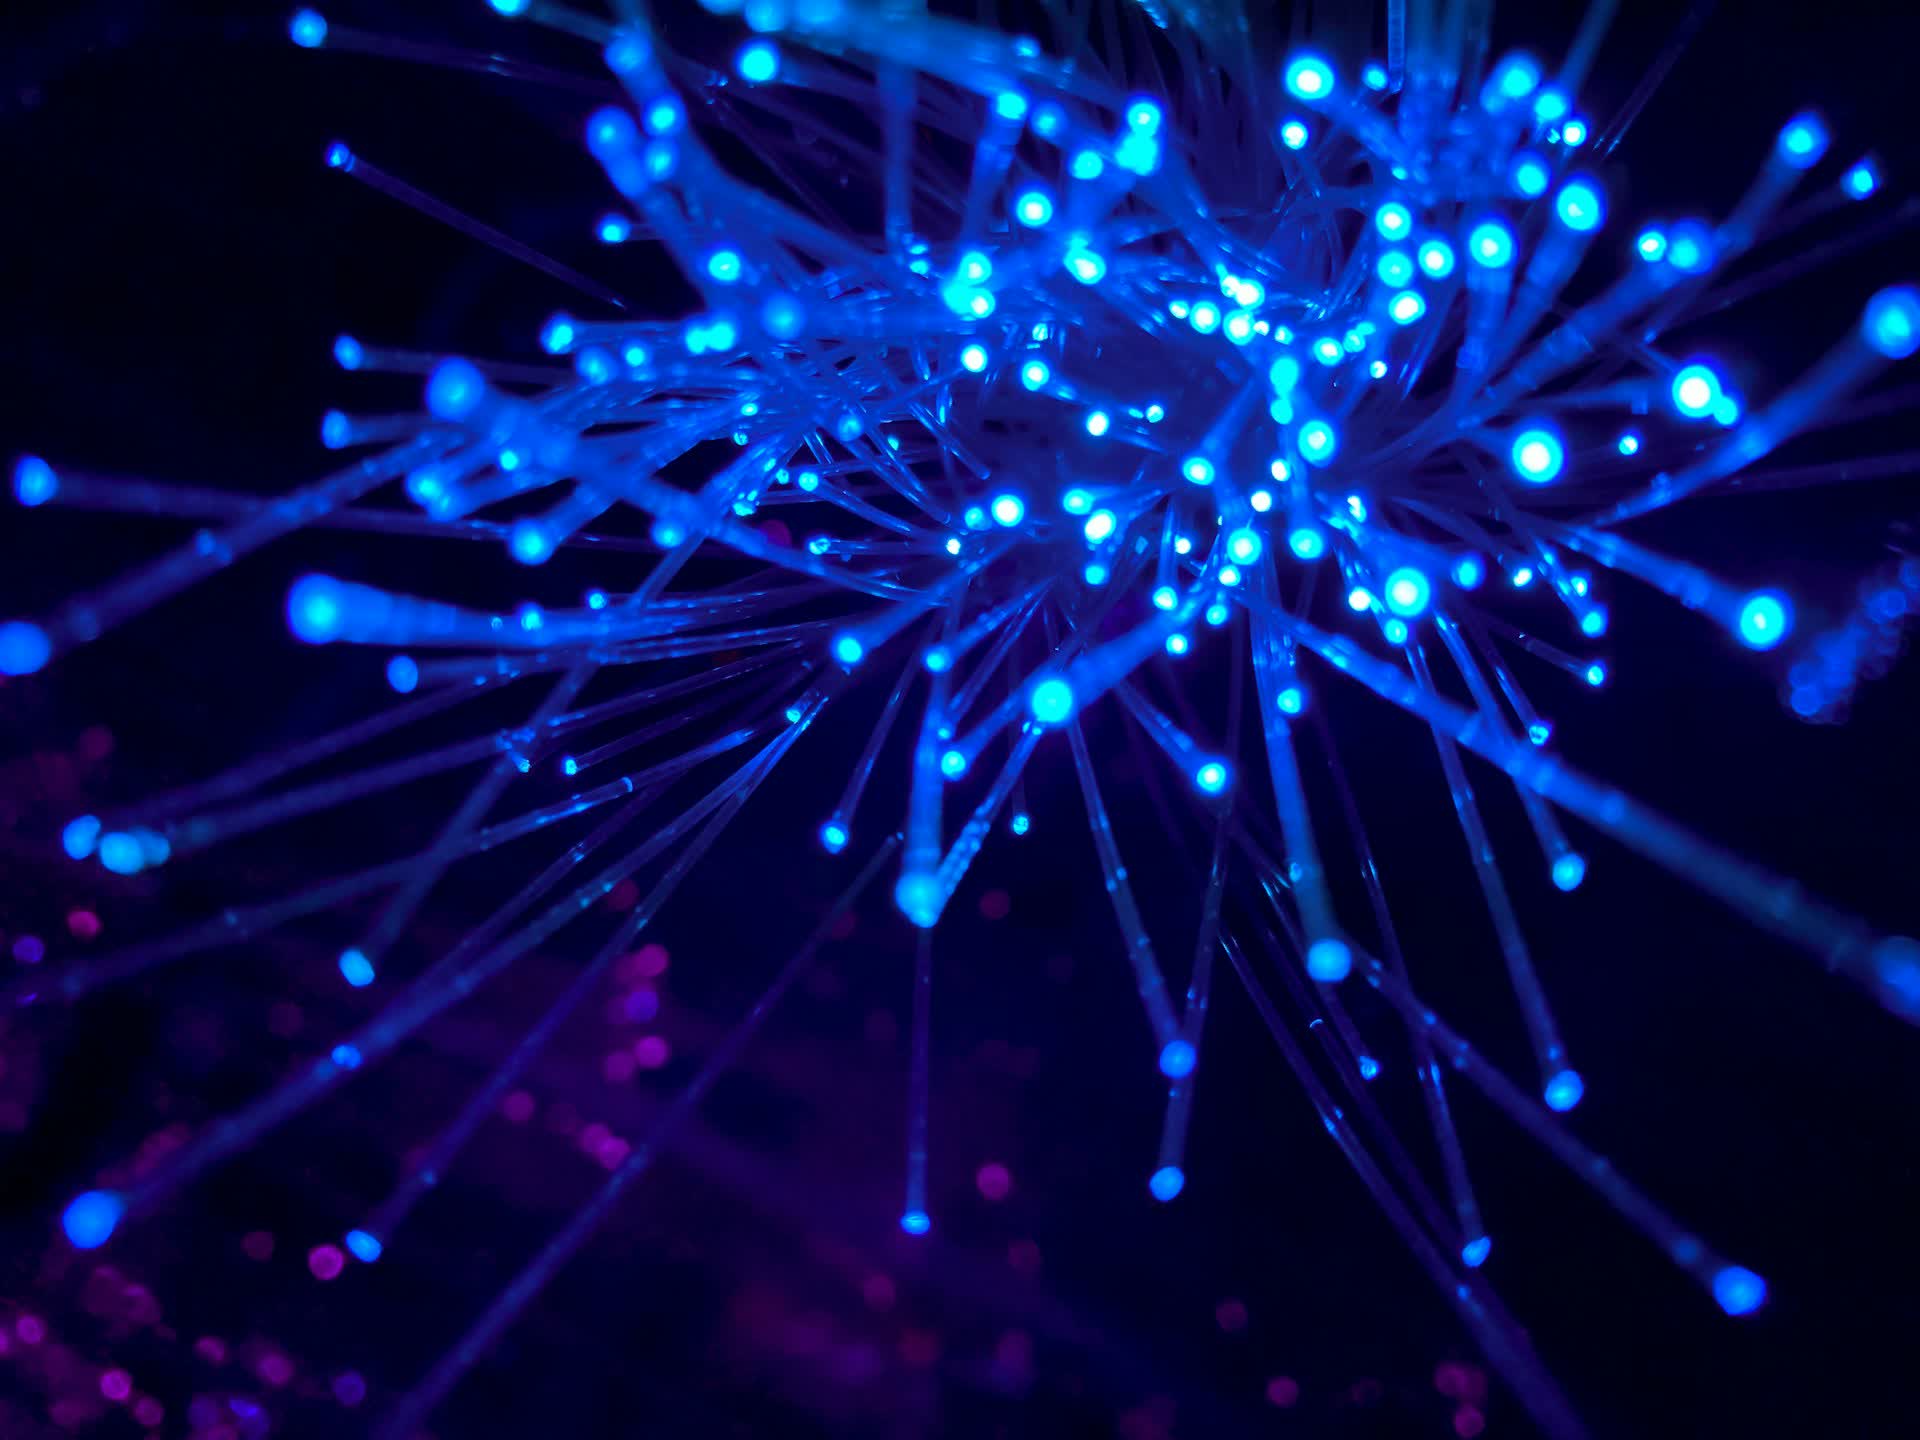 Investigadores de fibra óptica muestran velocidades 4,5 millones de veces más rápidas que la banda ancha doméstica promedio